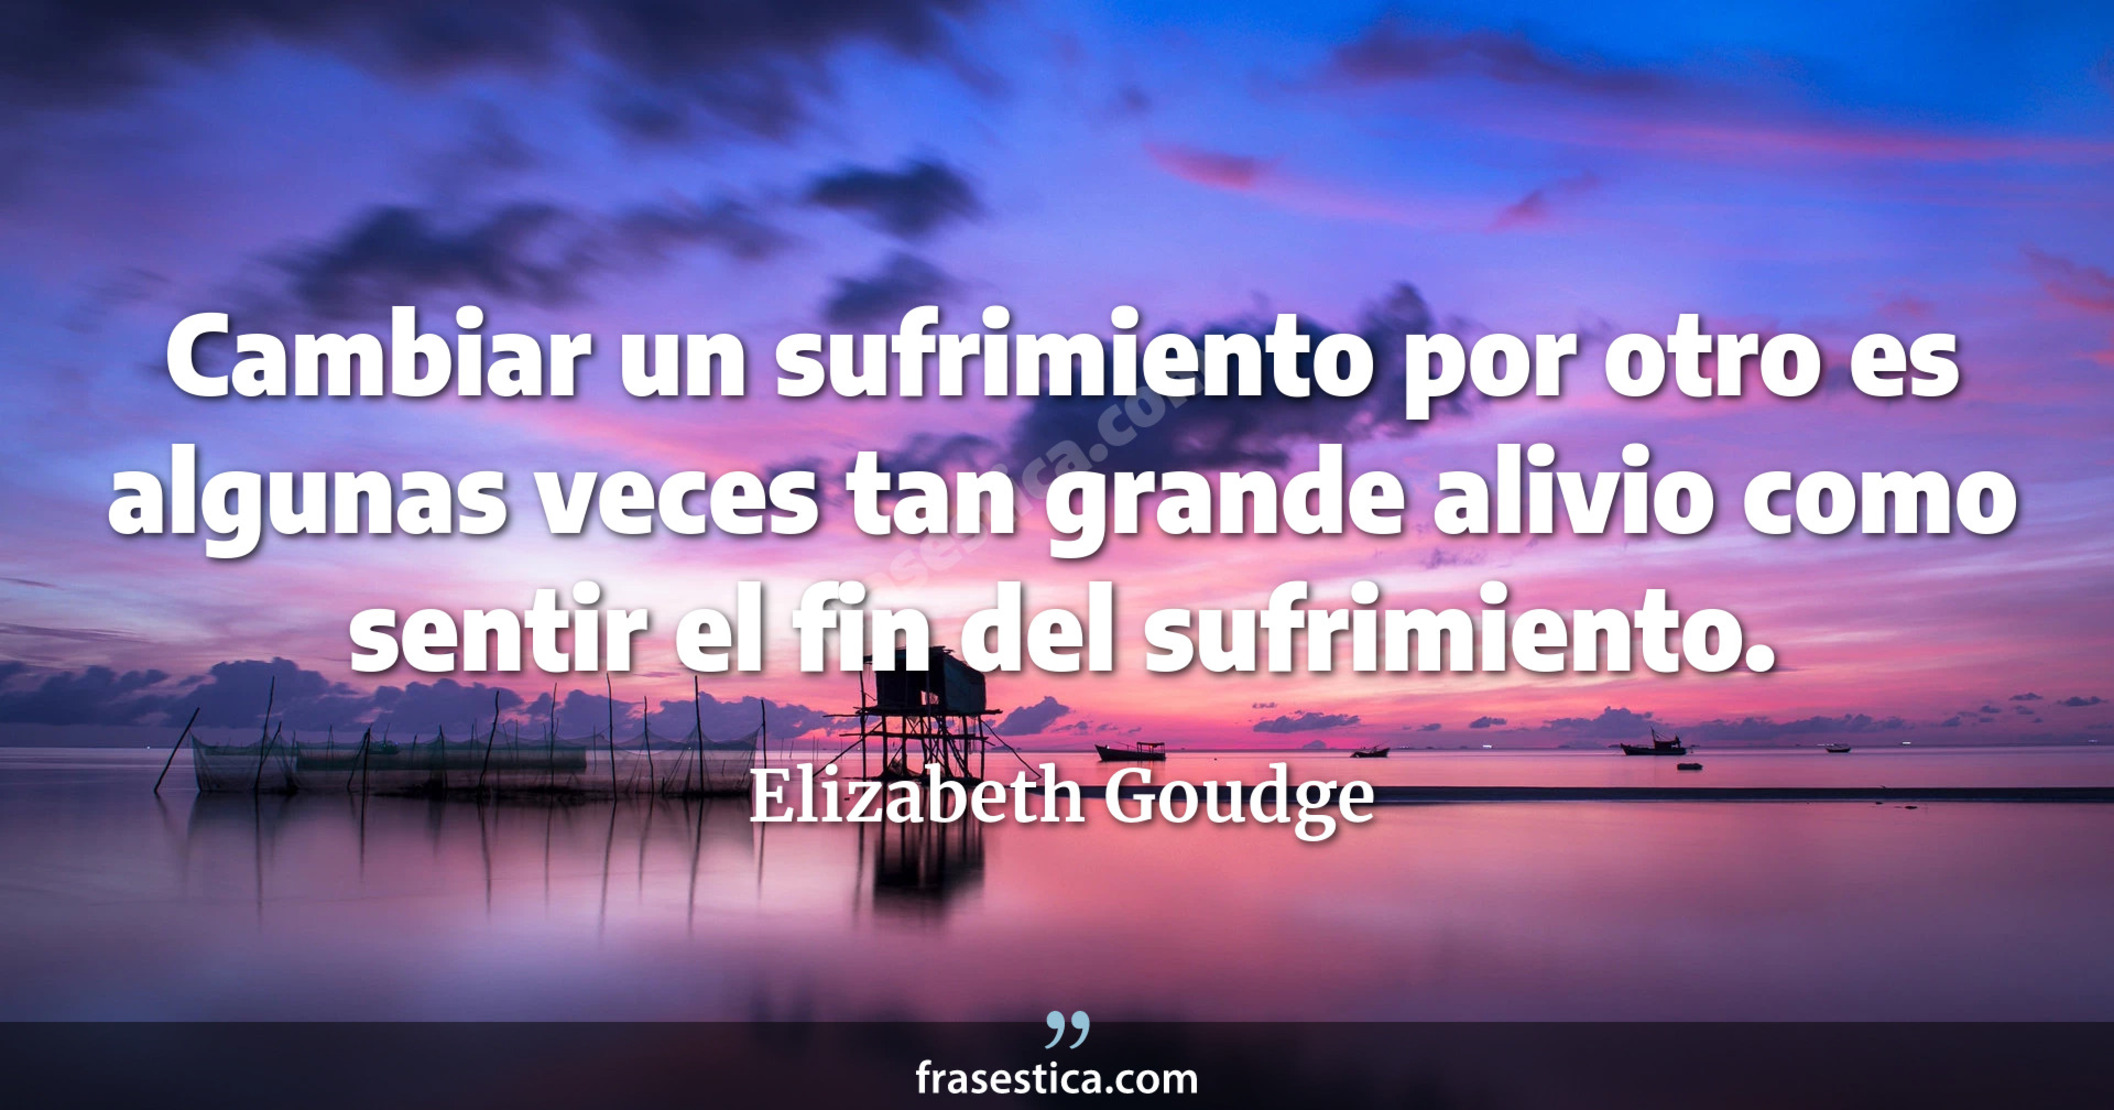 Cambiar un sufrimiento por otro es algunas veces tan grande alivio como sentir el fin del sufrimiento. - Elizabeth Goudge